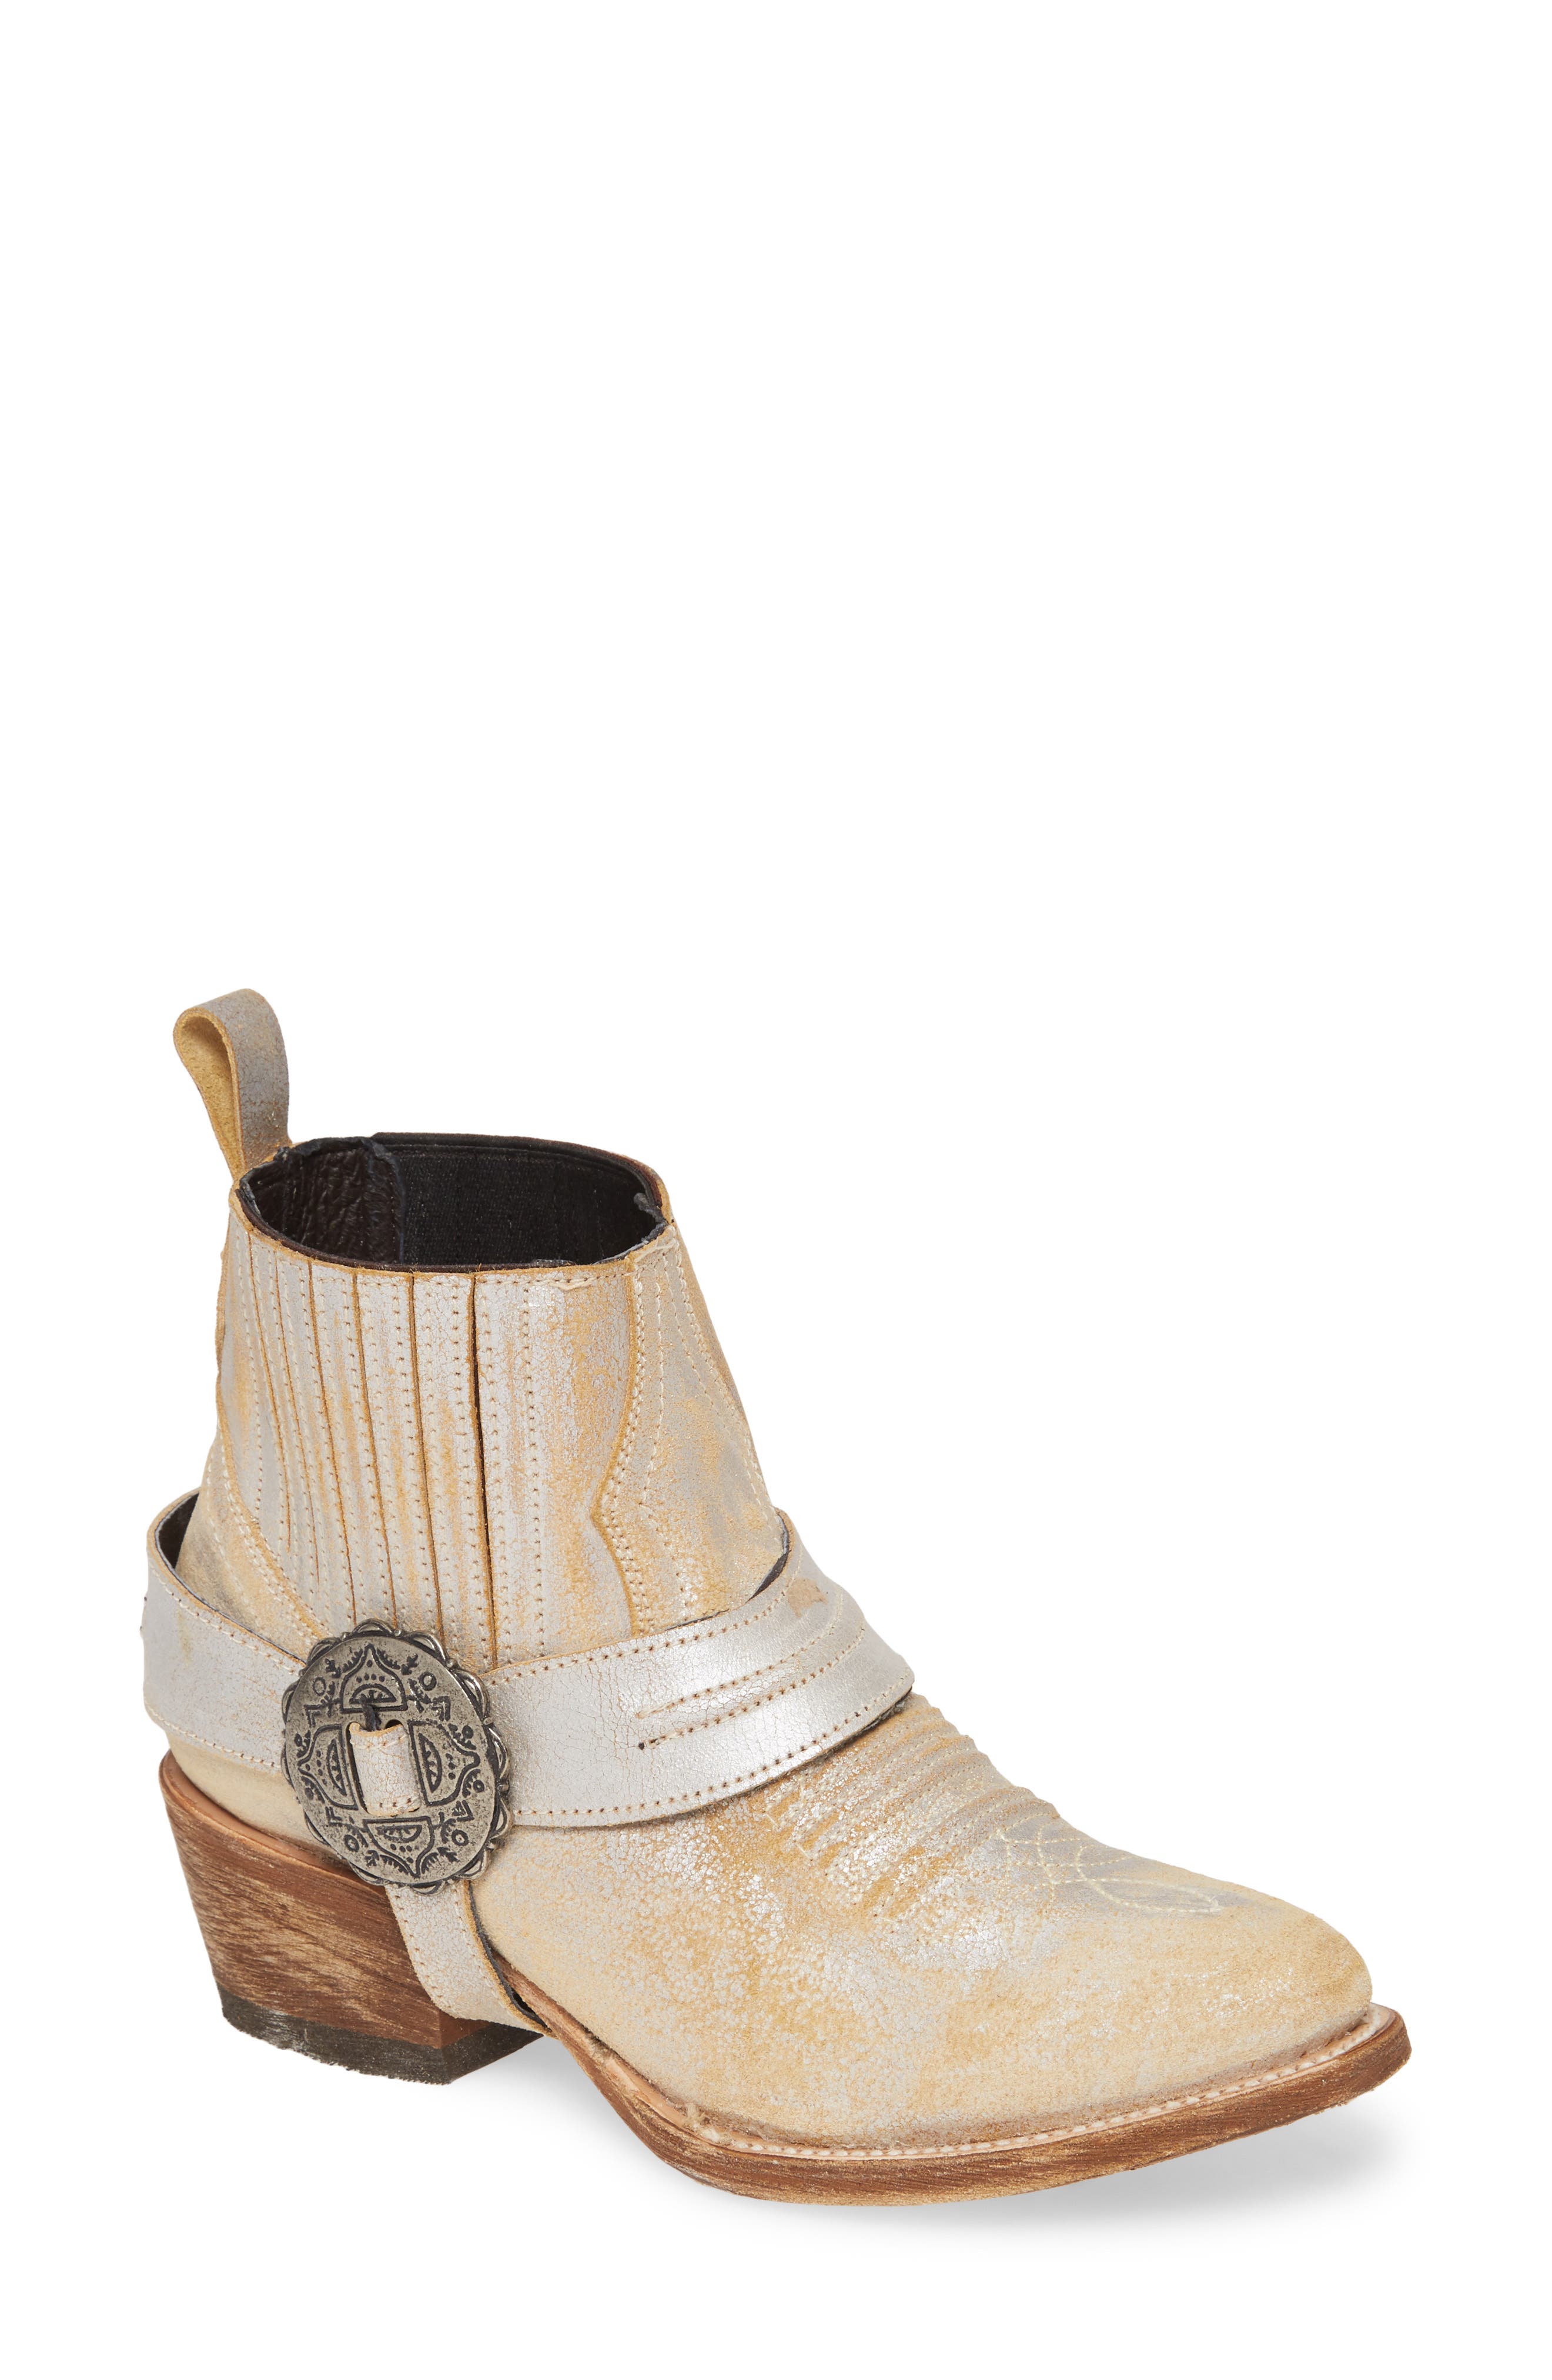 Sale: Women's Matisse Boots \u0026 Booties 